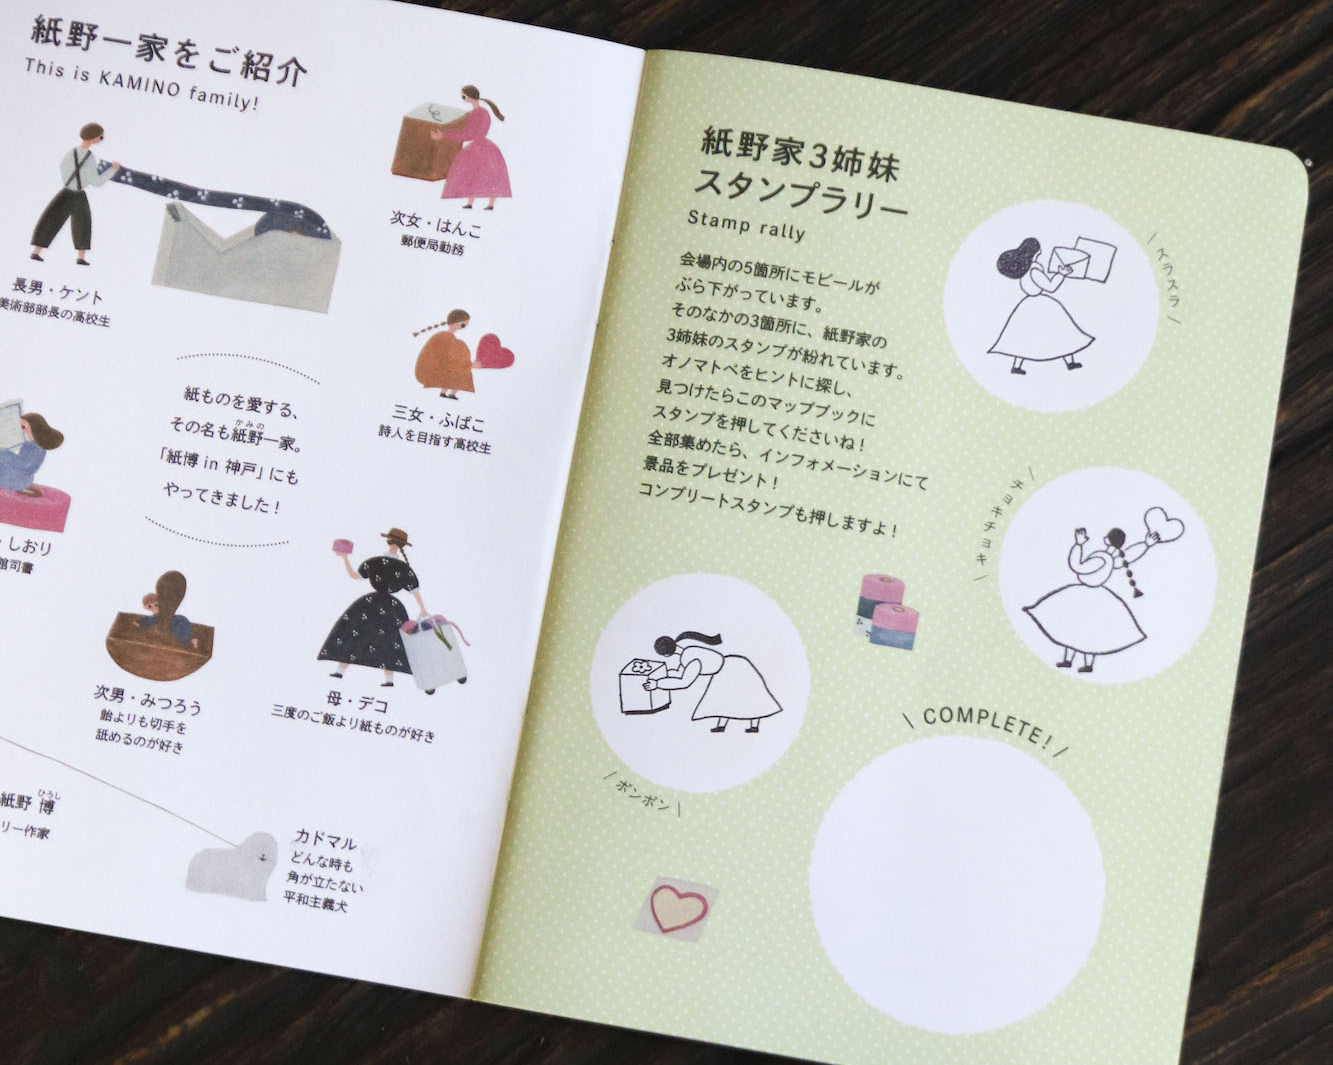 スタンプラリーで紙博限定の定規を手に入れよう！ | 紙博 in 神戸